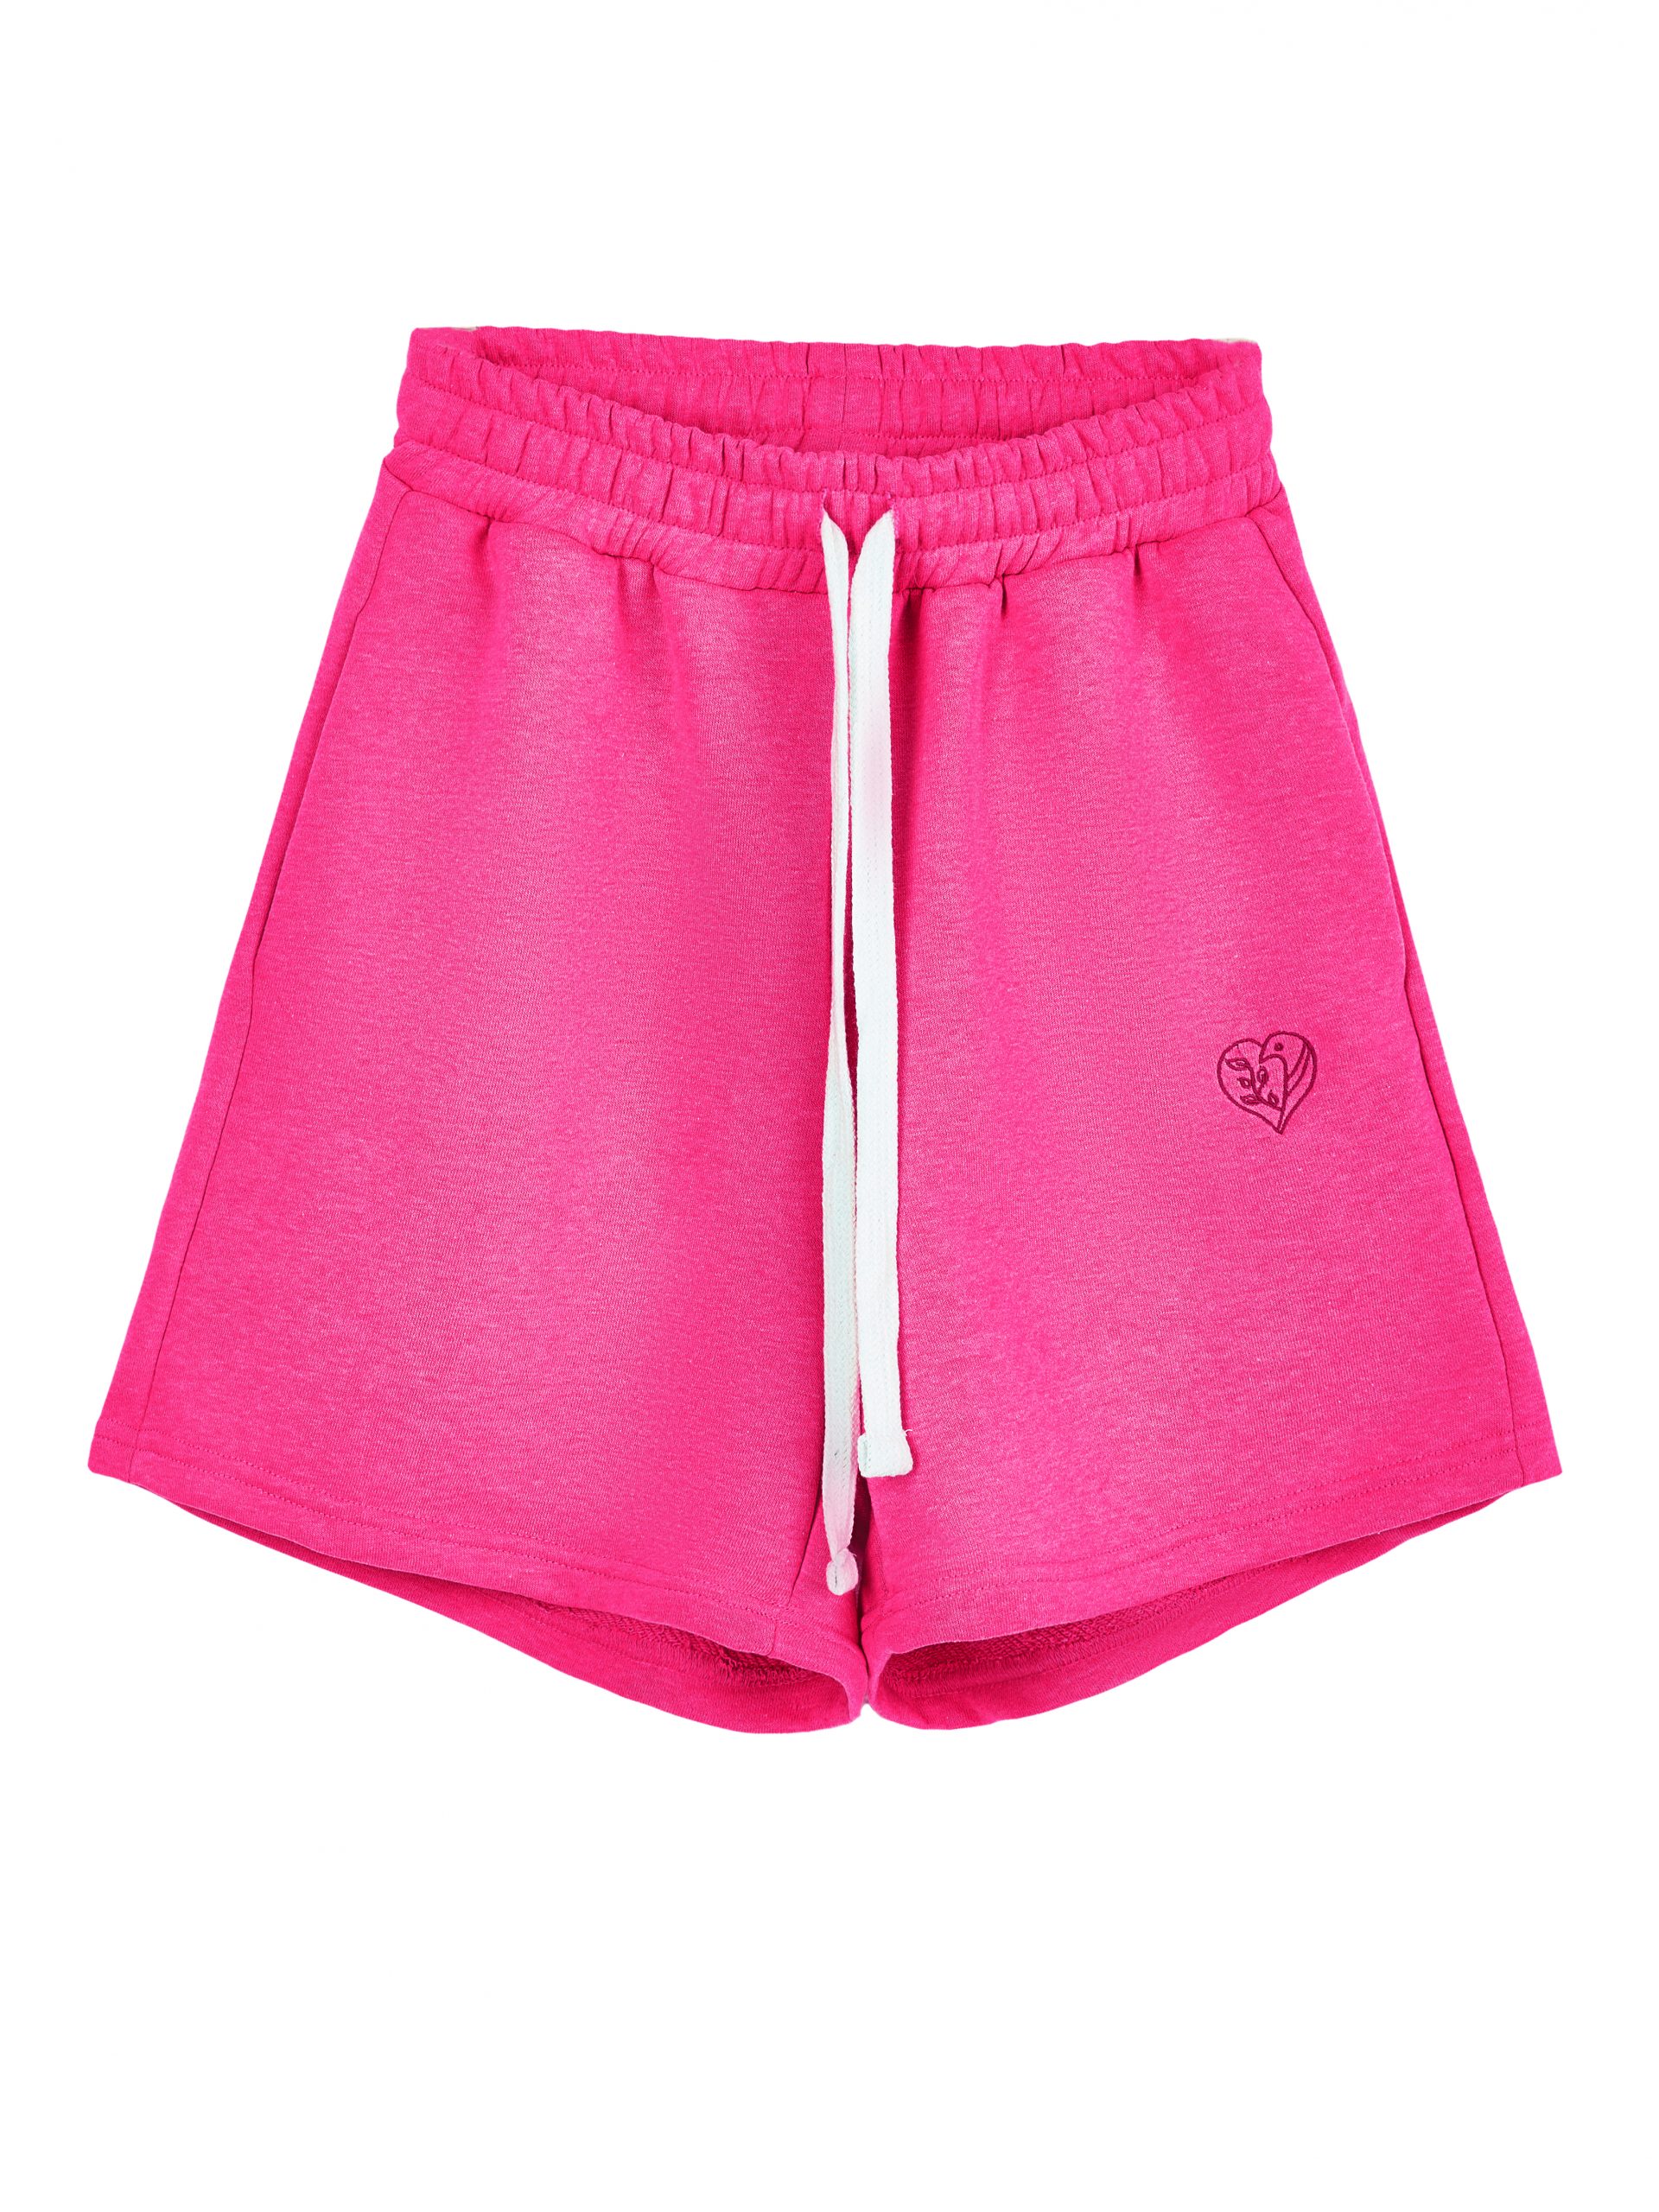 Повседневные шорты женские Atmosphere Summer vibes Color розовые XL